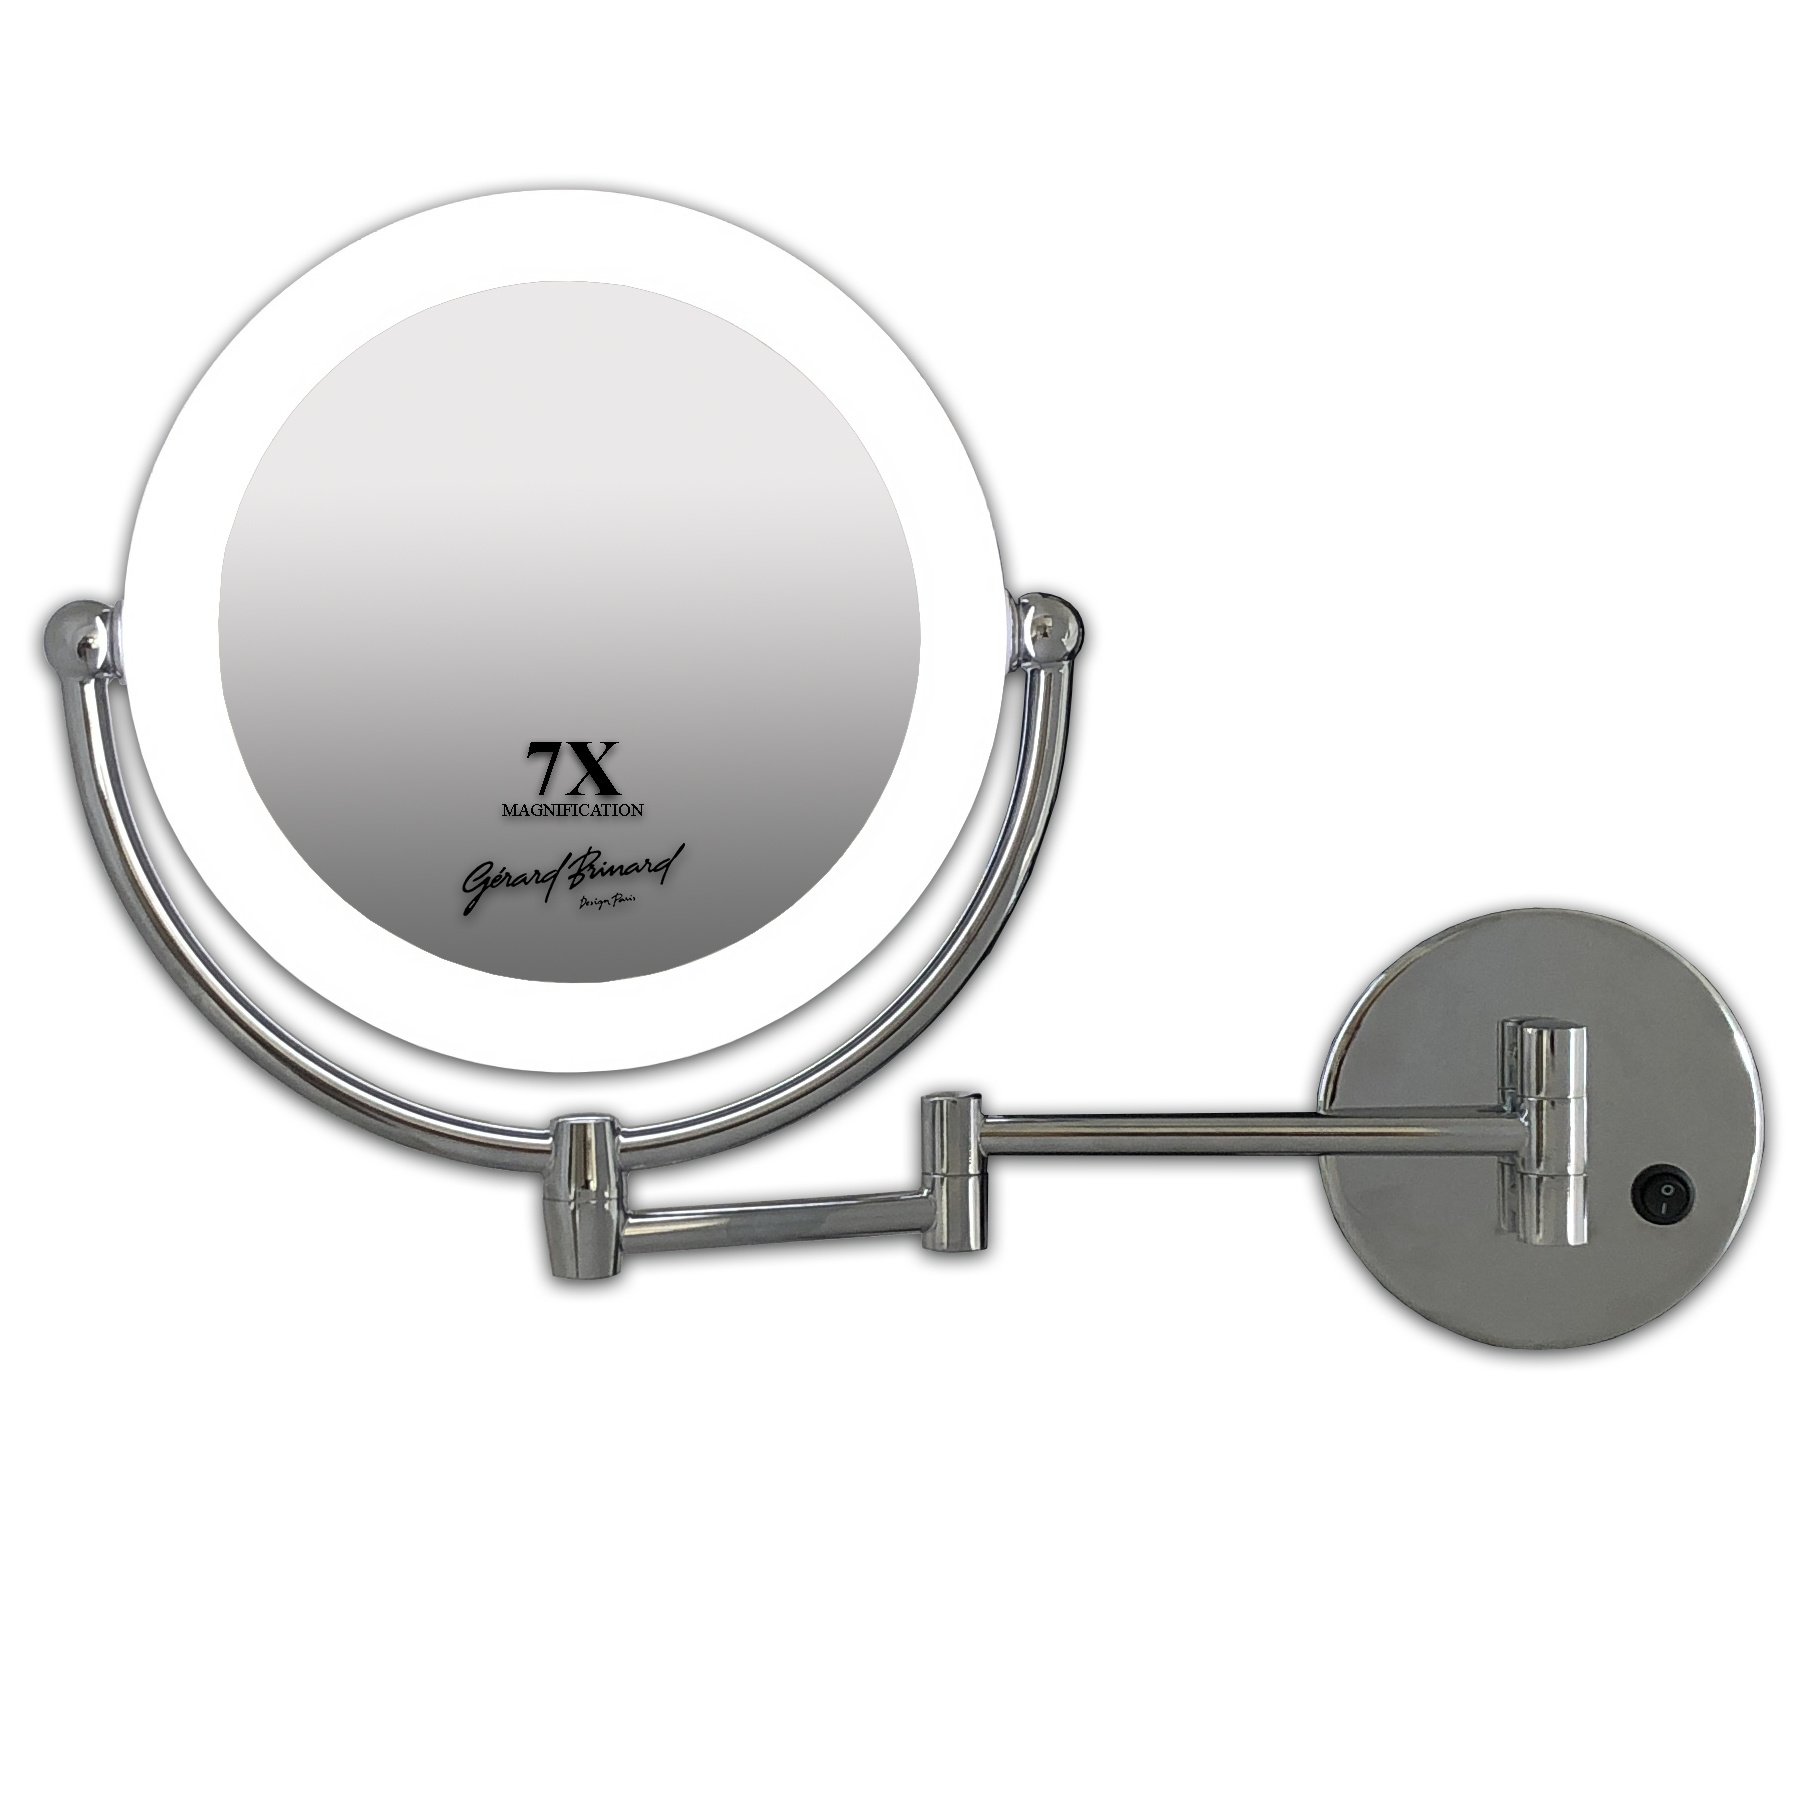 Gérard Brinard Metalen wand knik arm badkamer LED Spiegel chroom, Dubbelzijdig verlicht, 7x vergroting 22cm doorsnee, inculsief 4x AA batterijen en stroomkabel(USB).